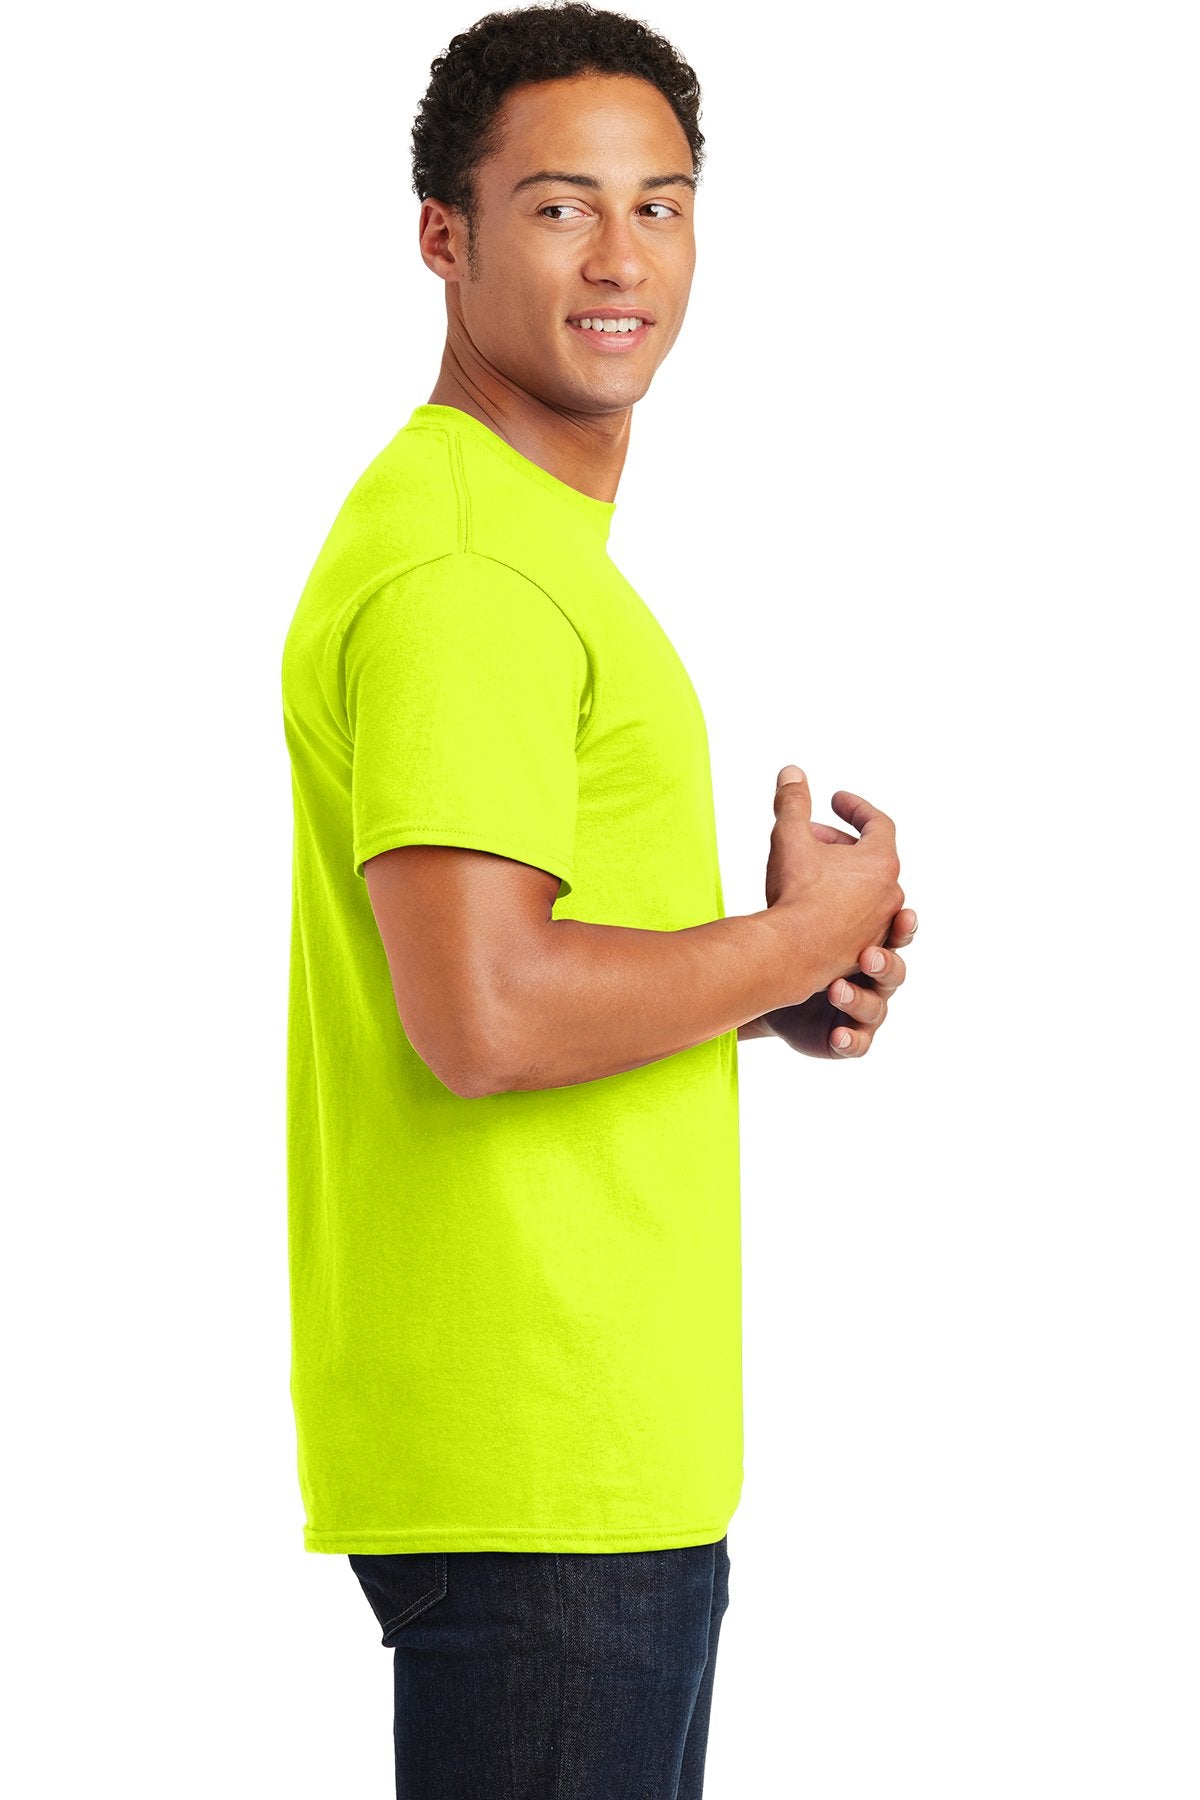 gildan ultra cotton t shirt 2000 safety green